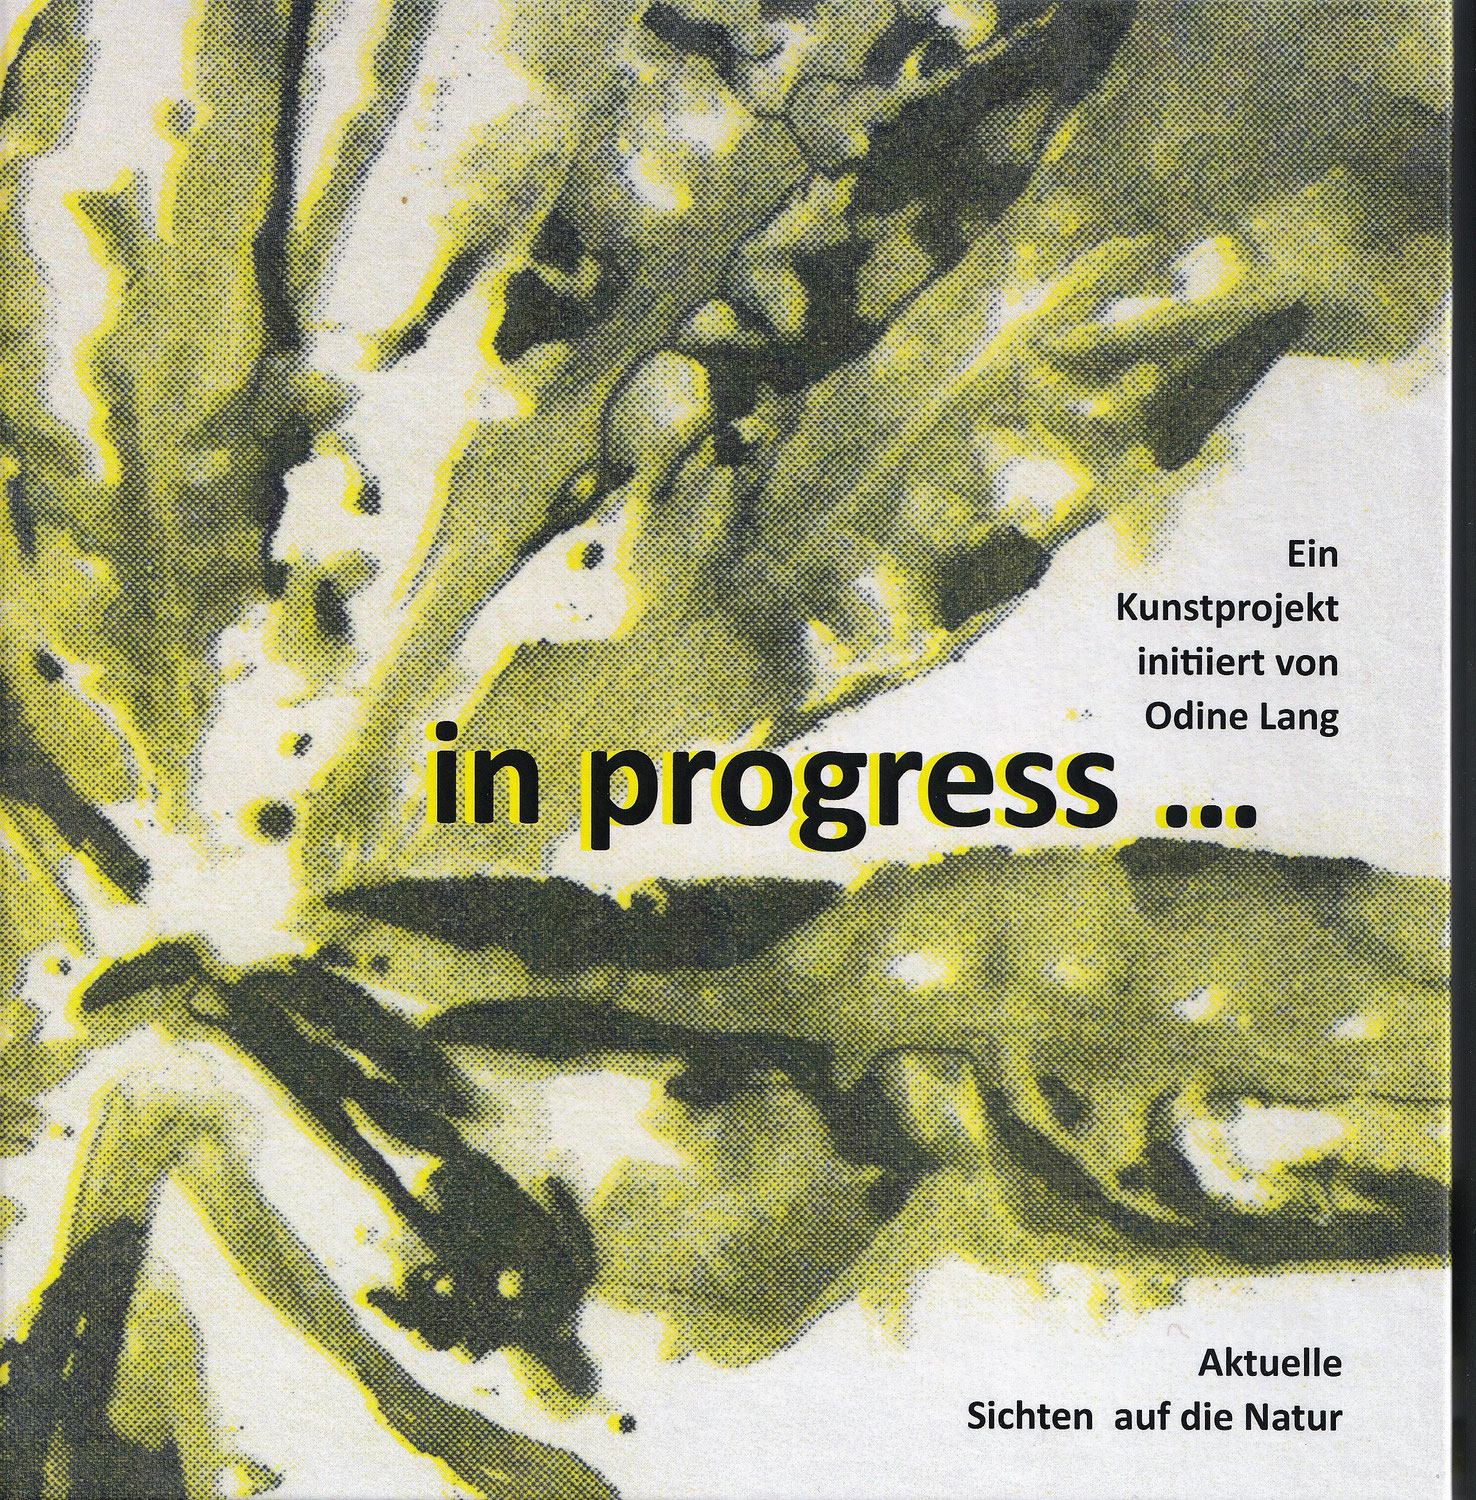 Das Projektbuch "in progress - Aktuelle Sichten auf die Natur" ist da!